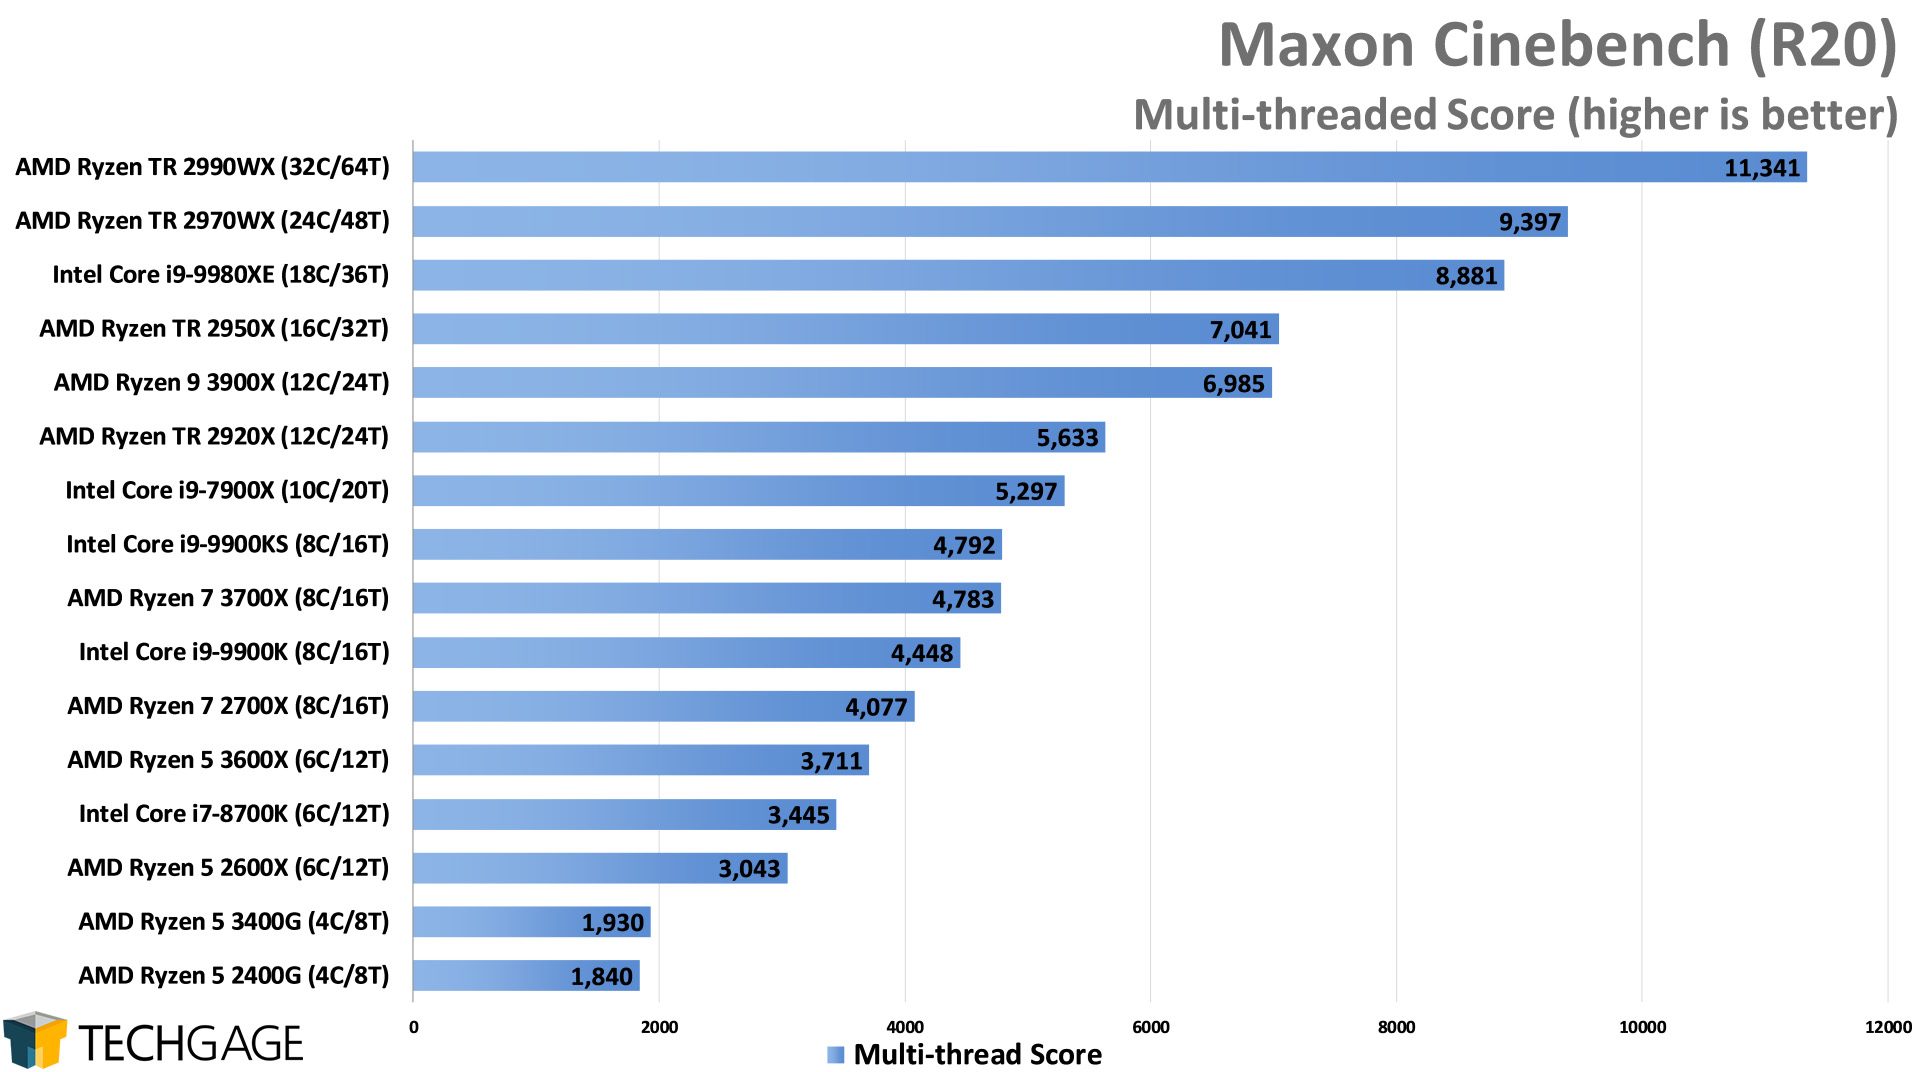 Maxon Cinebench R20 - Multi-threaded Score (Intel Core i9-9900KS)